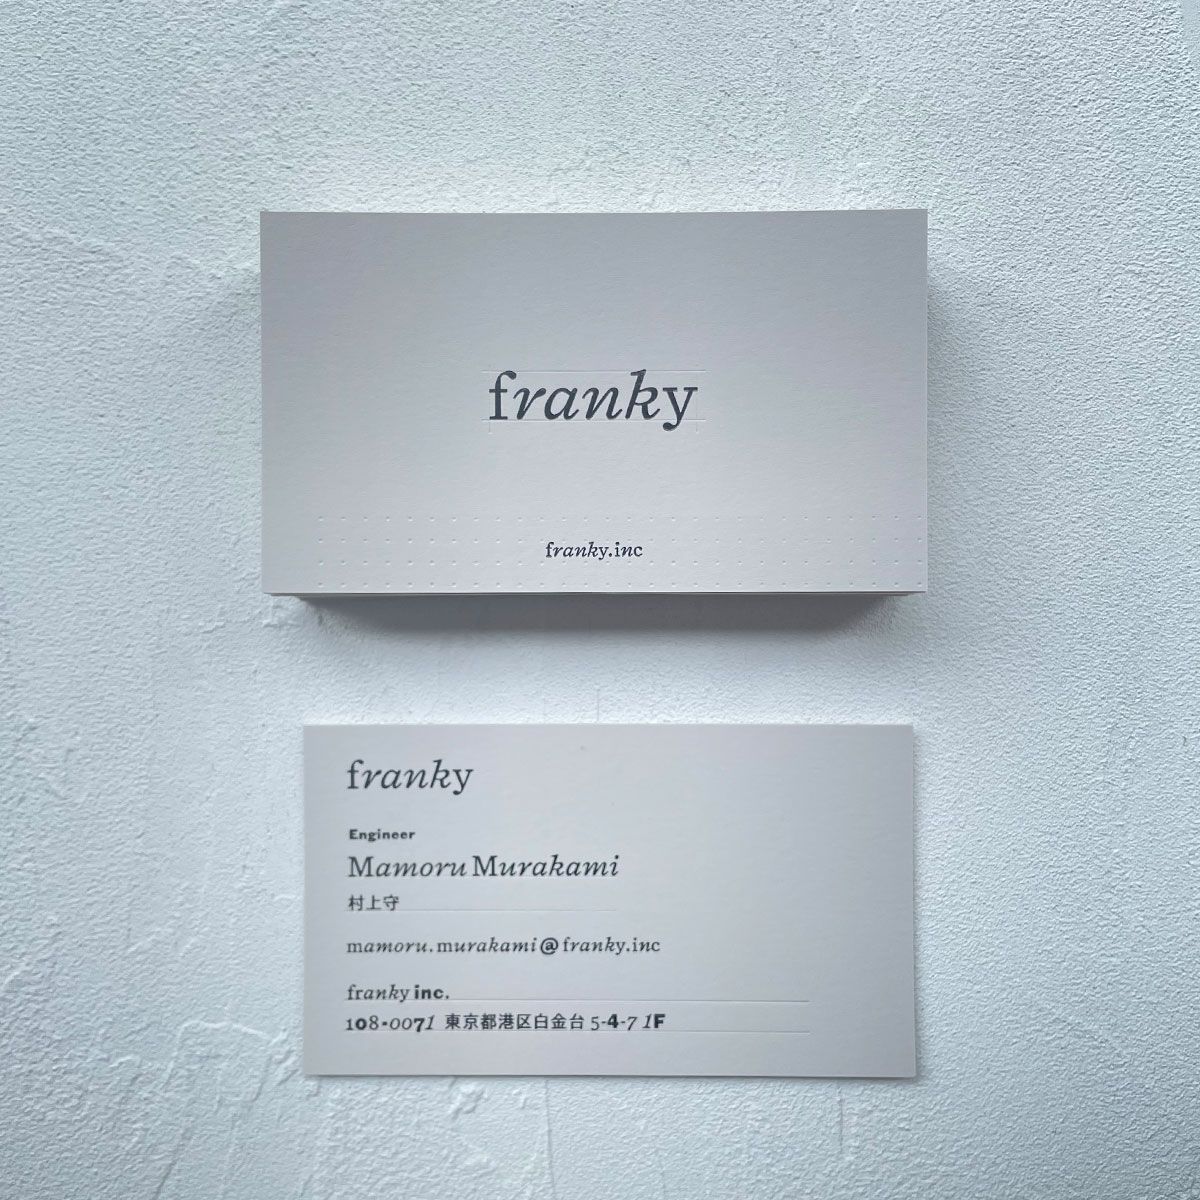 「Welcome to franky」
まだまだ手探りで、始まったばかりの会社ですが、ぜひあなたのお力をfrankyで活かしてみませんか？